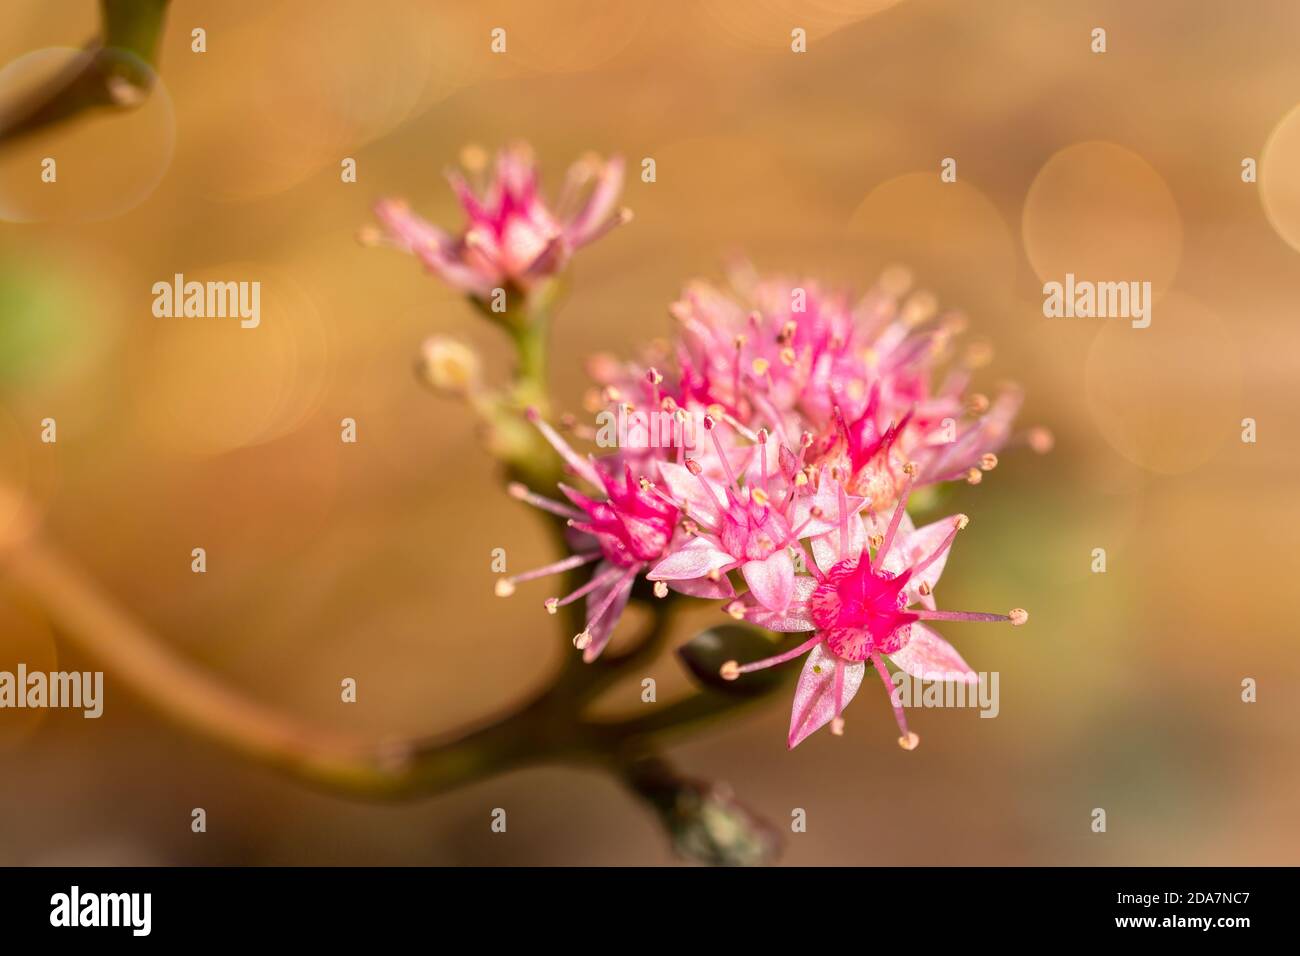 Makrobild der Blumen der Sedum-Pflanze, mit schönen weichen rosa Tönen in der Blume und im Bokeh-Hintergrund Stockfoto